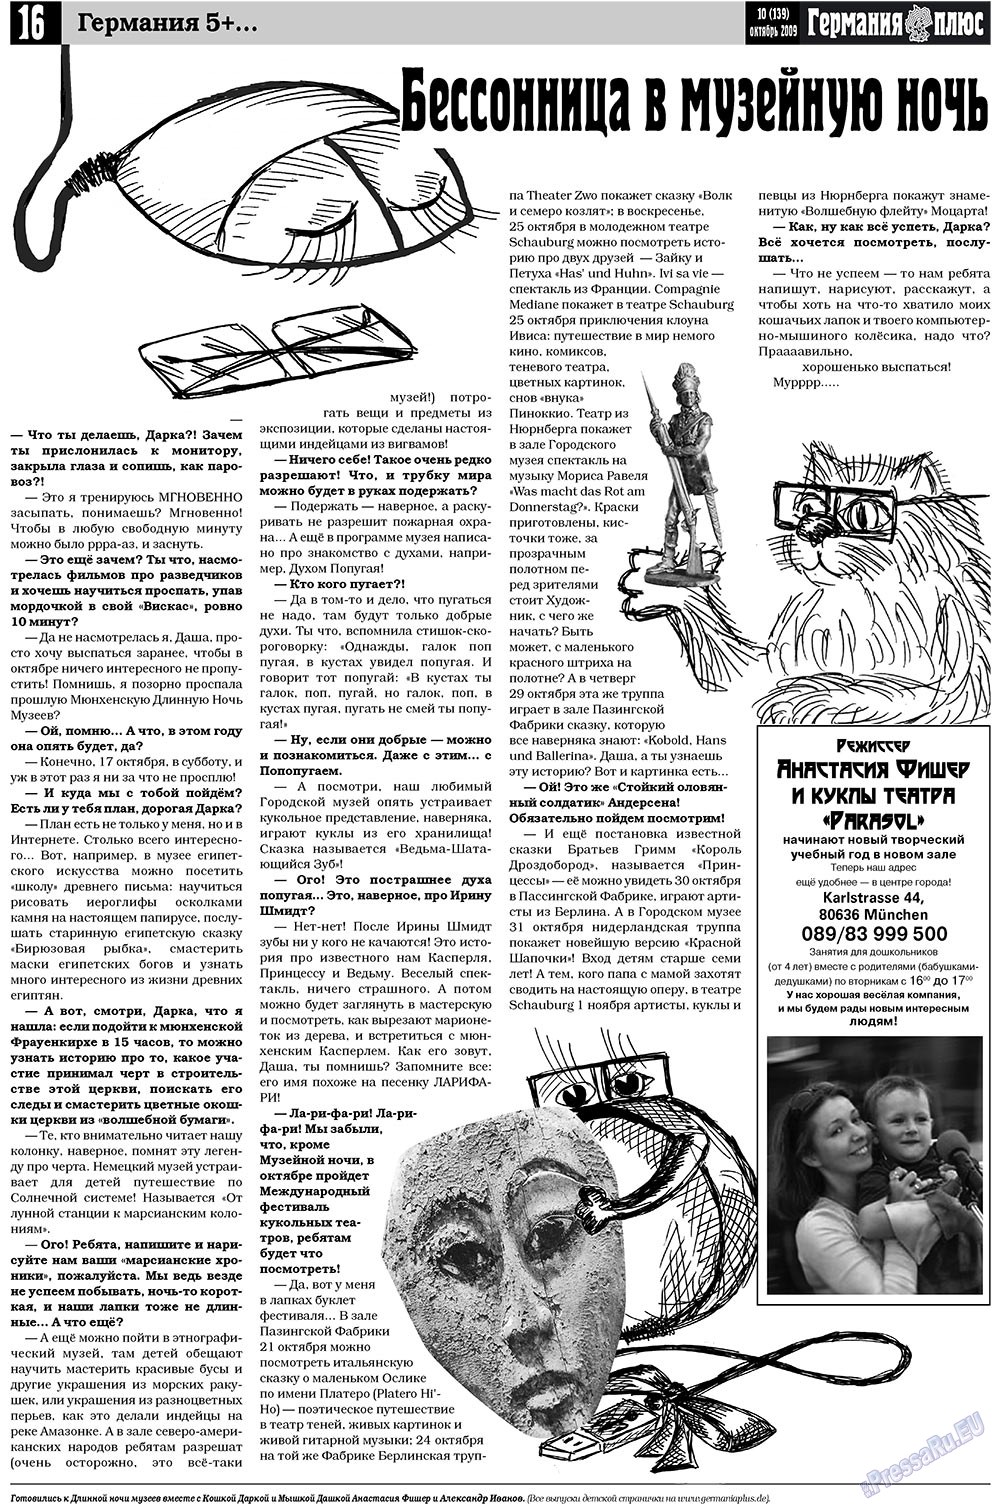 Германия плюс (газета). 2009 год, номер 10, стр. 16